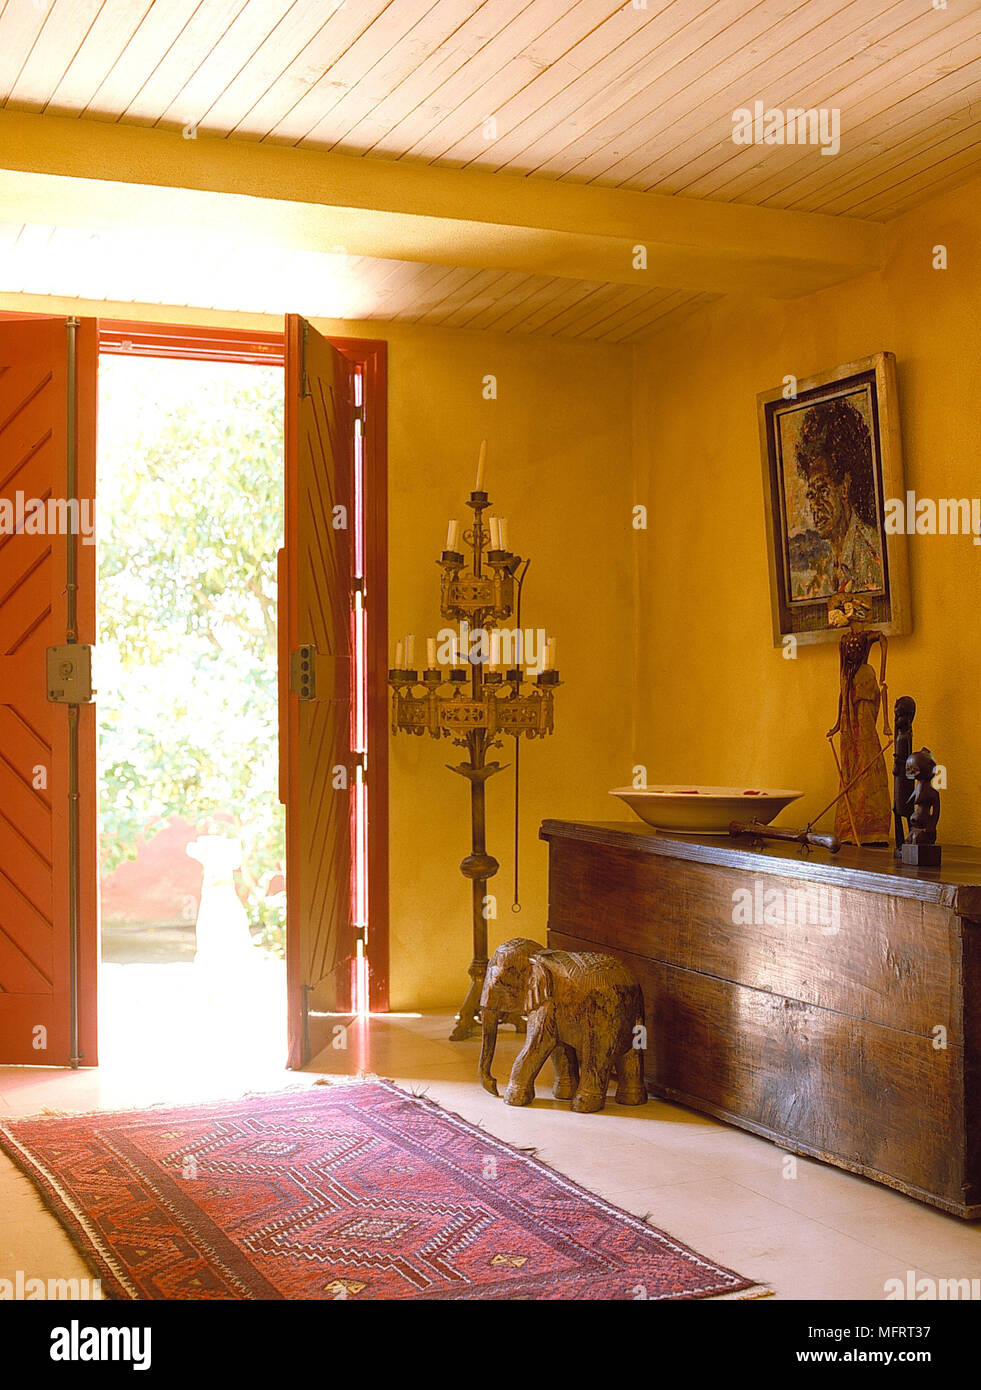 Doppelte vordere Türen öffnen in gelben Flur mit hölzernen Kasten Stockfoto